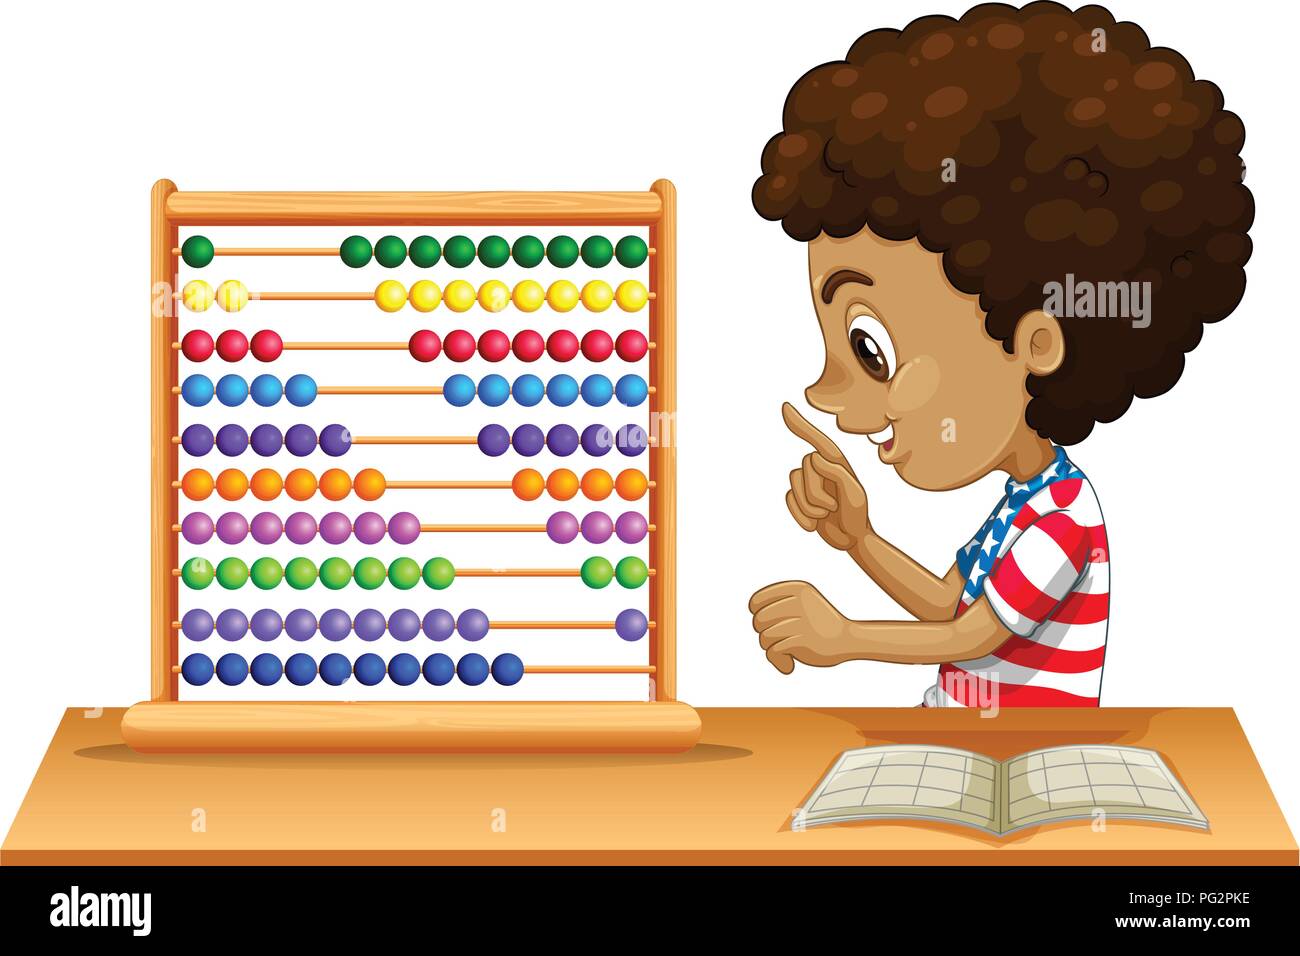 Un enfant africain abacus apprentissage illustration Illustration de Vecteur